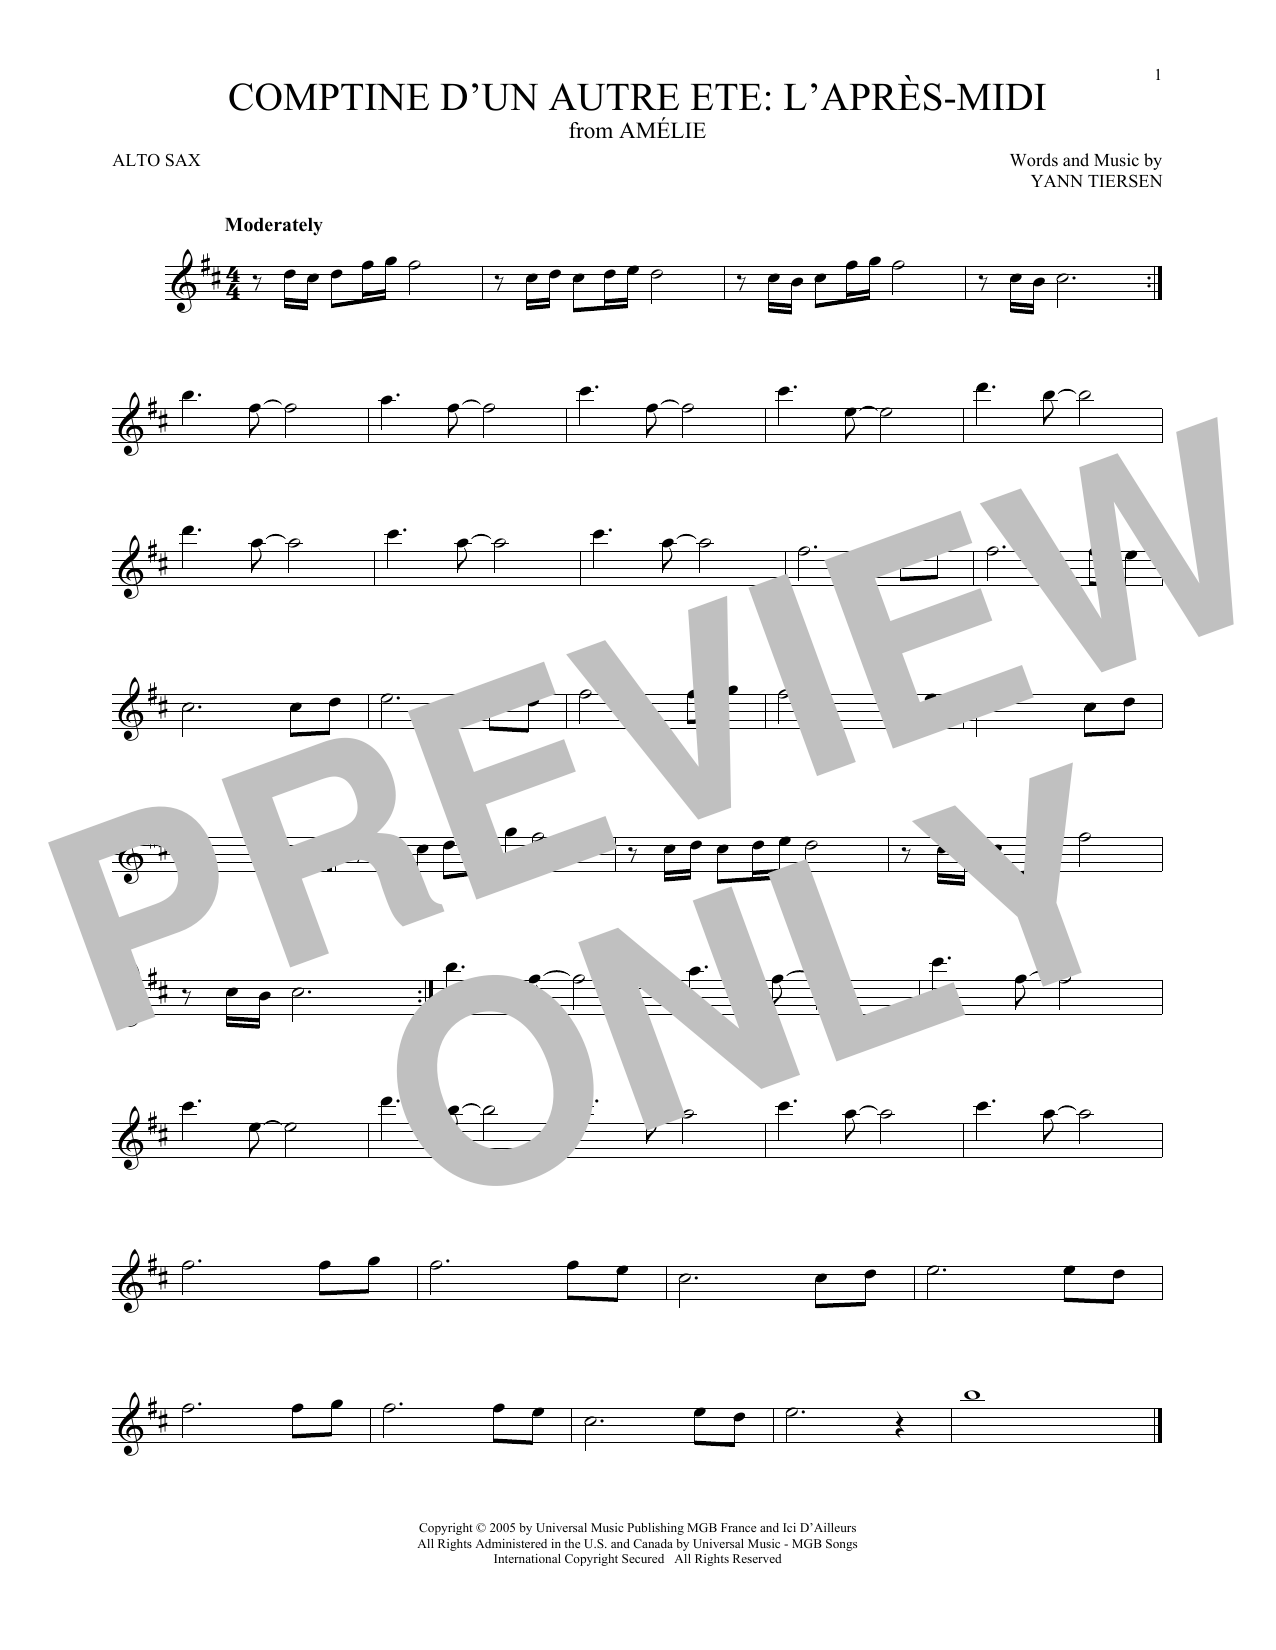 Yann Tiersen Comptine d'un autre été: L'après-midi (from Amelie) Sheet Music Notes & Chords for Trumpet Solo - Download or Print PDF